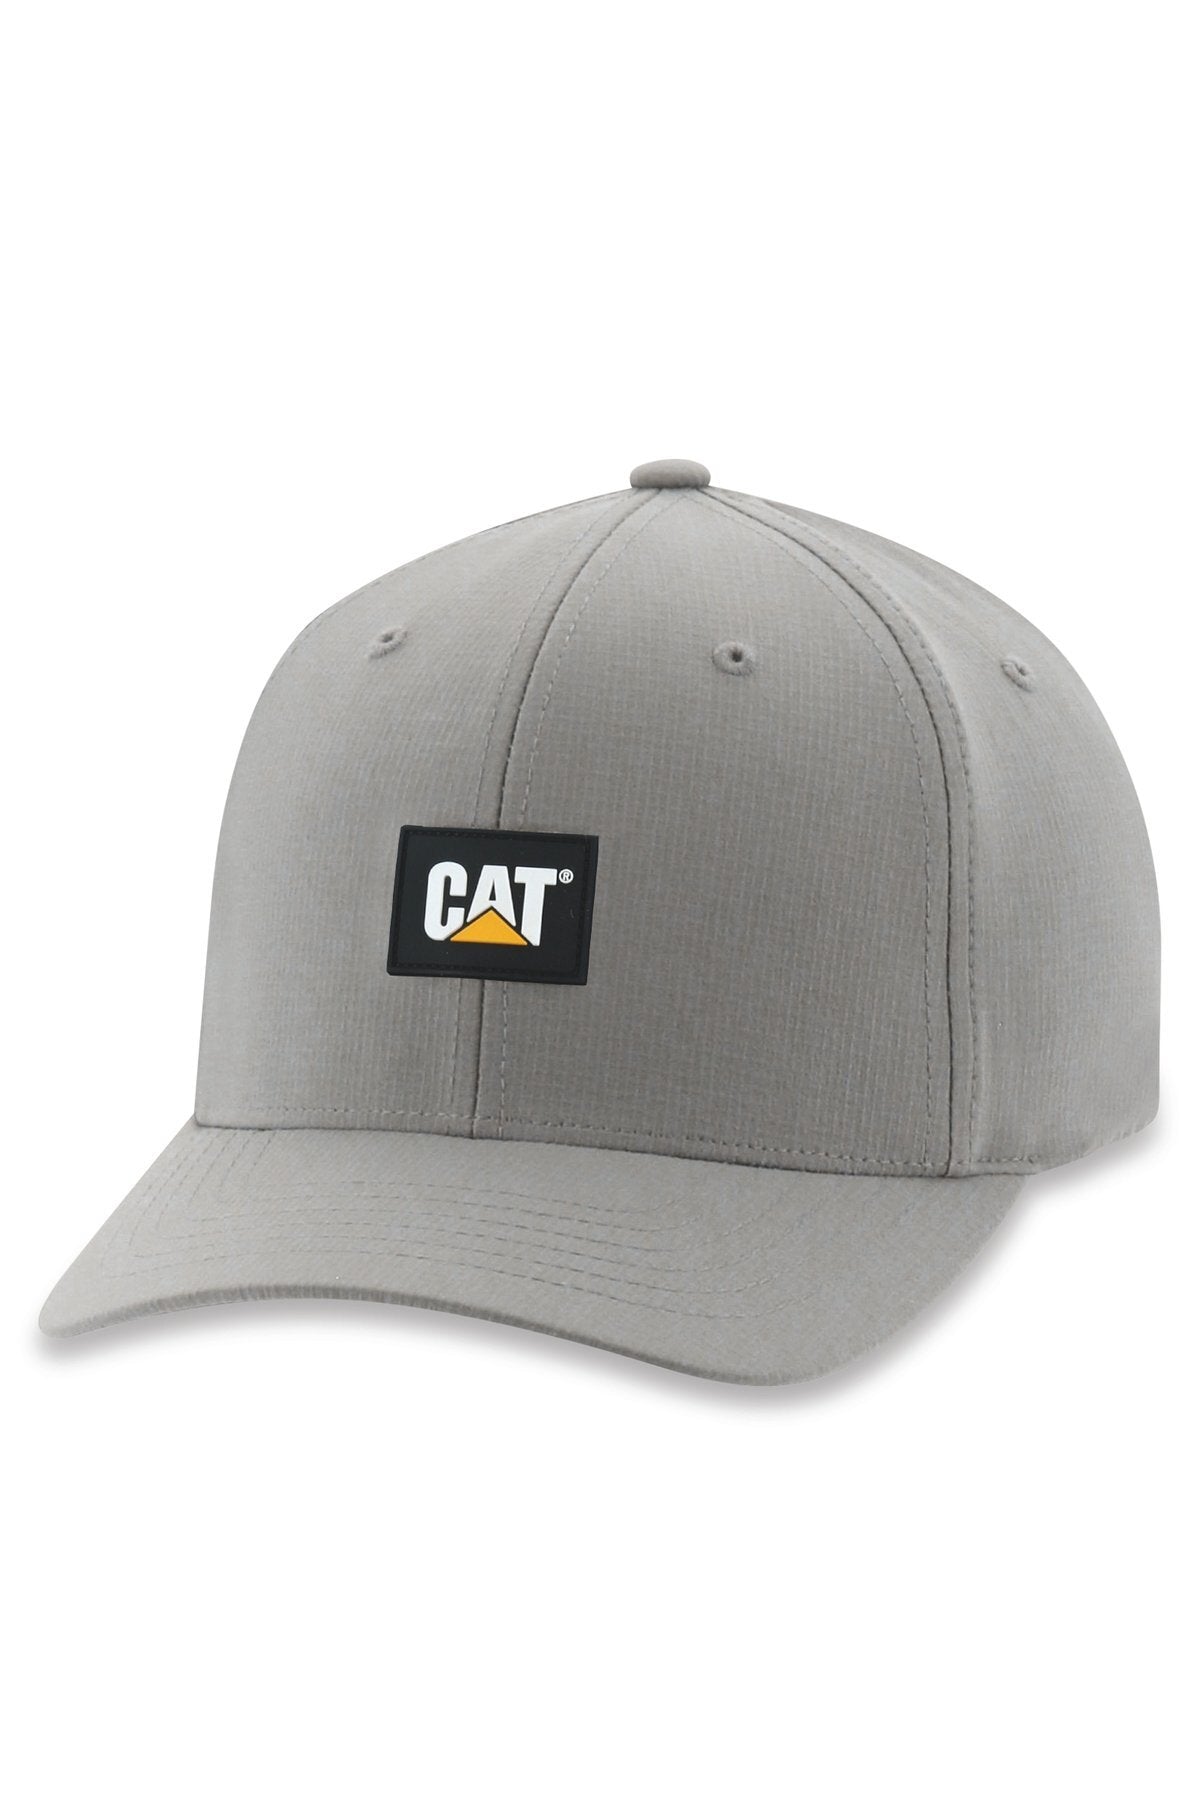 CAT Label Ripstop Caps